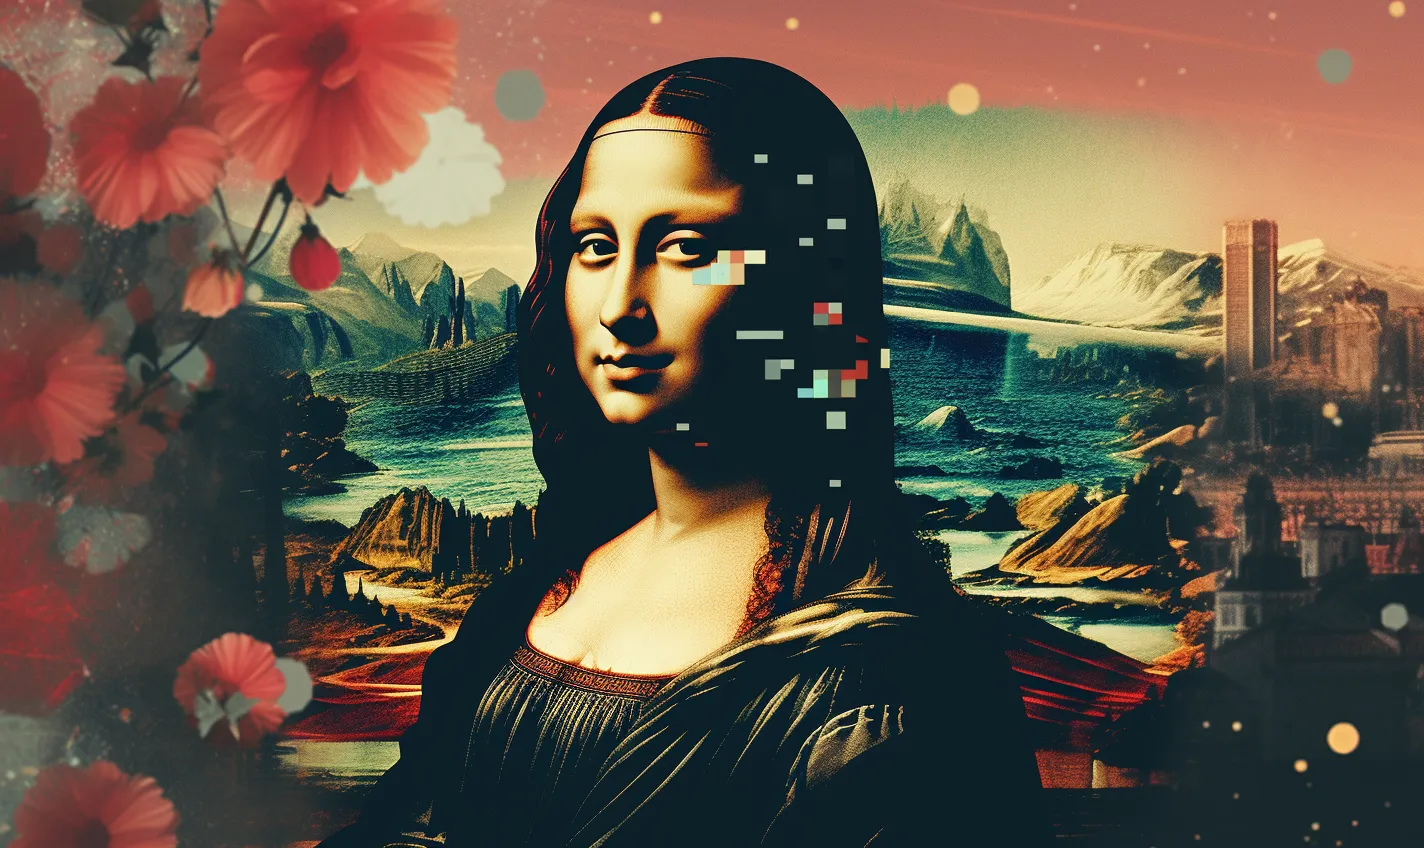 Mona Lisa aesthetic collage